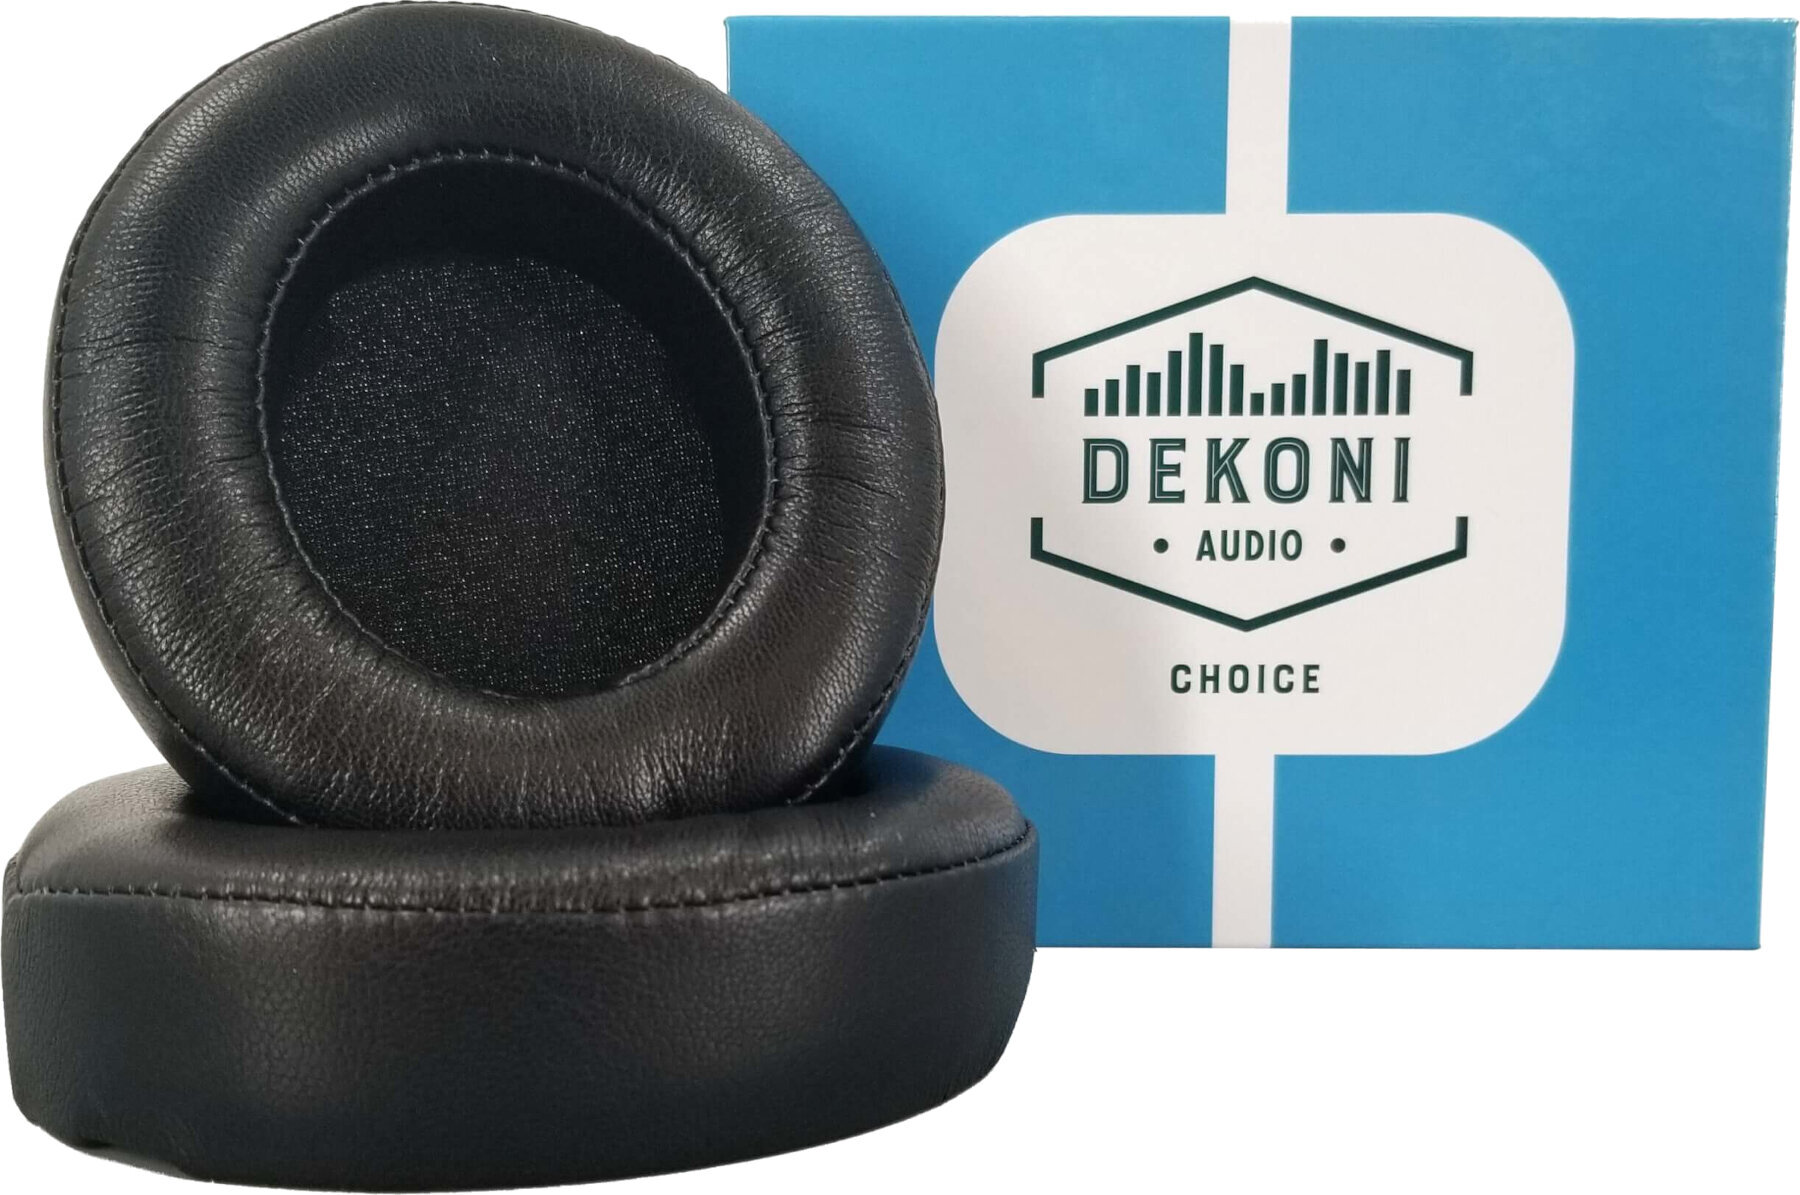 Ear Pads for headphones Dekoni Audio EPZ-AONIC-CHL Ear Pads for headphones Black